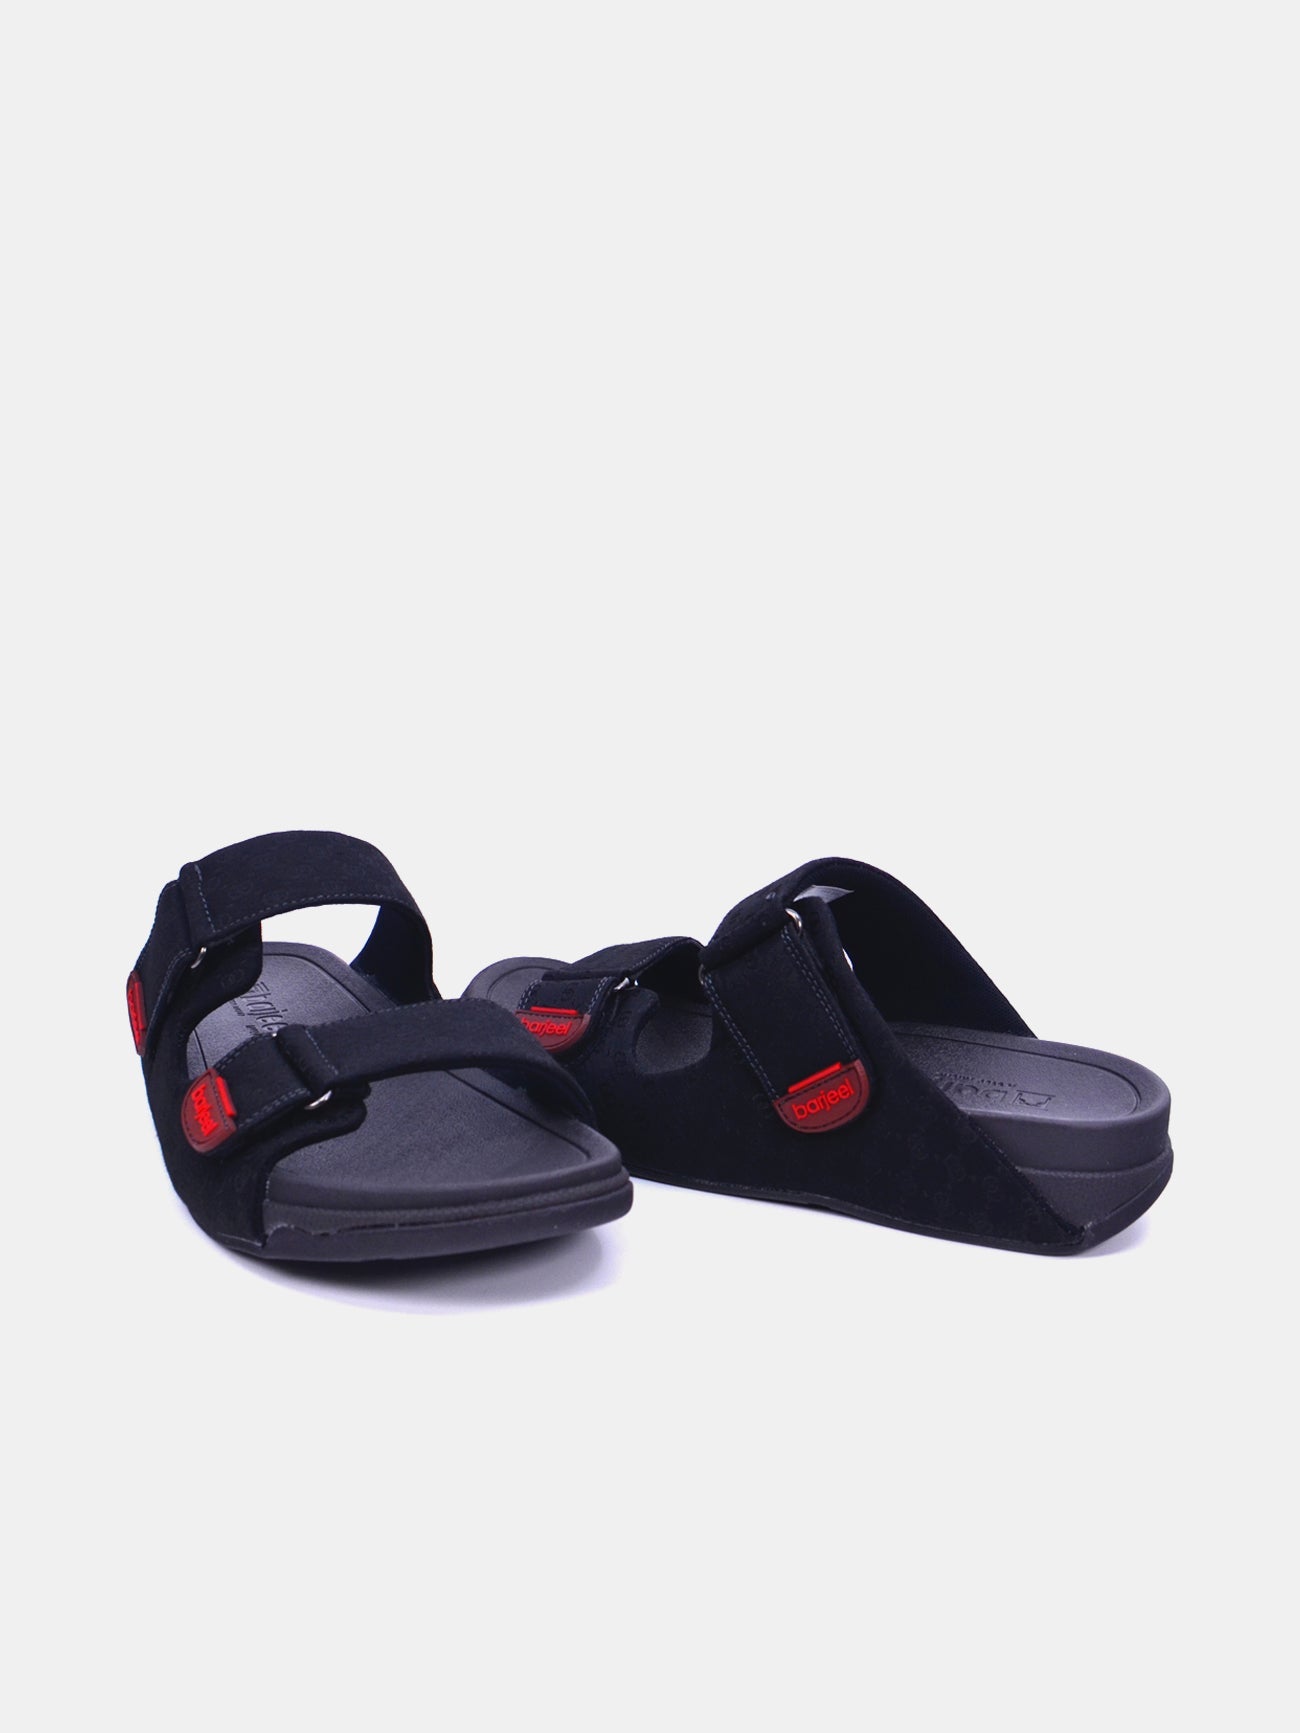 Barjeel Uno 20272-2 Men's Arabic Sandals #color_Black